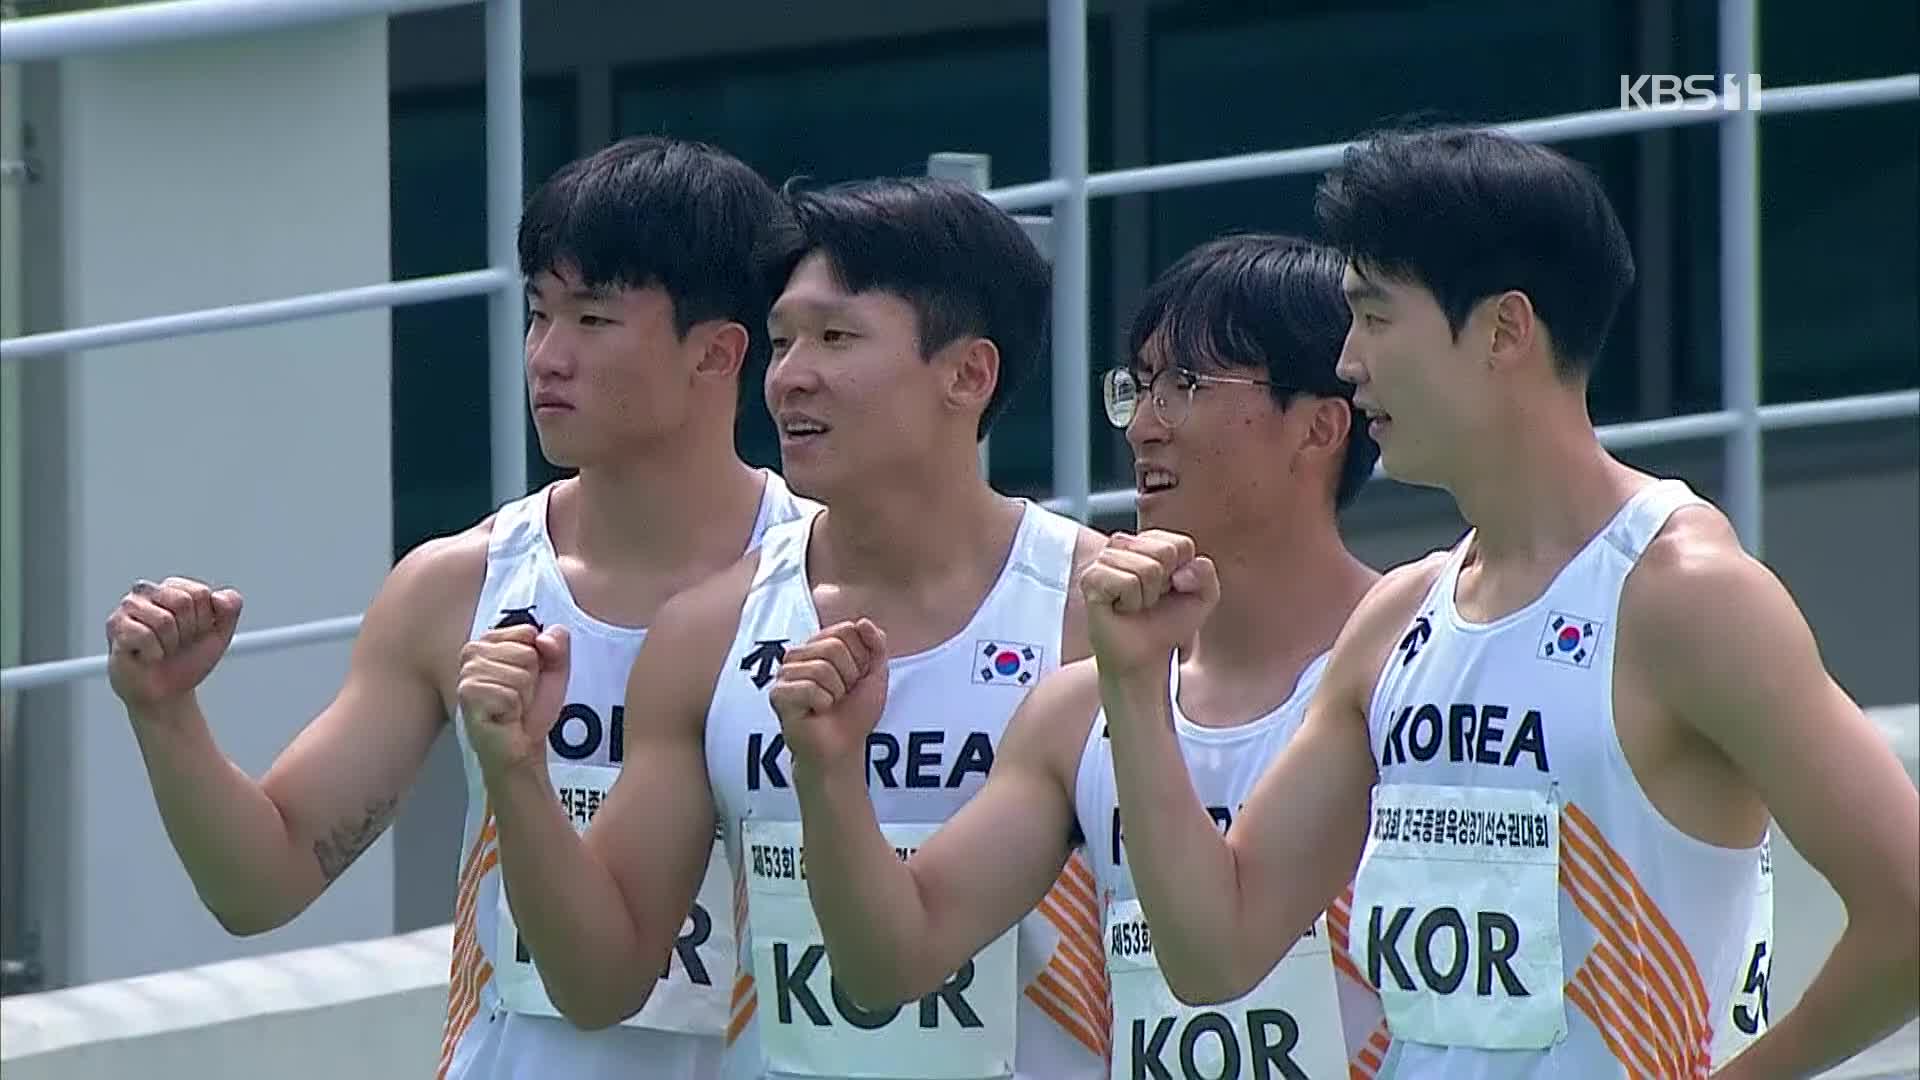 [오늘의 영상] 남자 계주 400m 10년 만에 한국 신기록